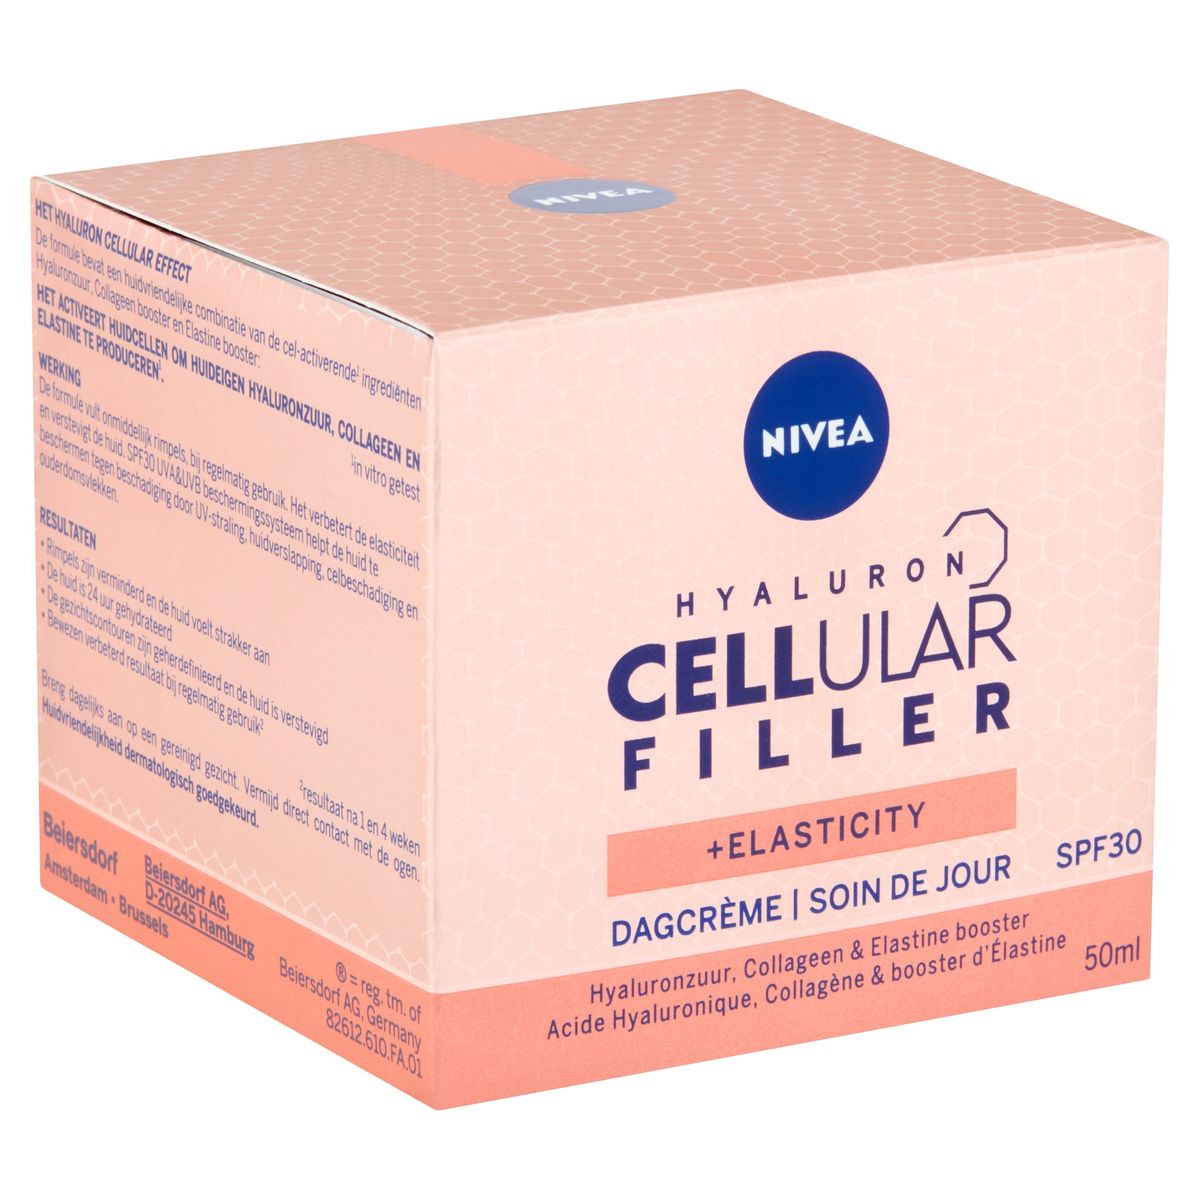 Nivea Hyaluron Cellular Filler + Elasticity Dagcrème SPF30 50 ml